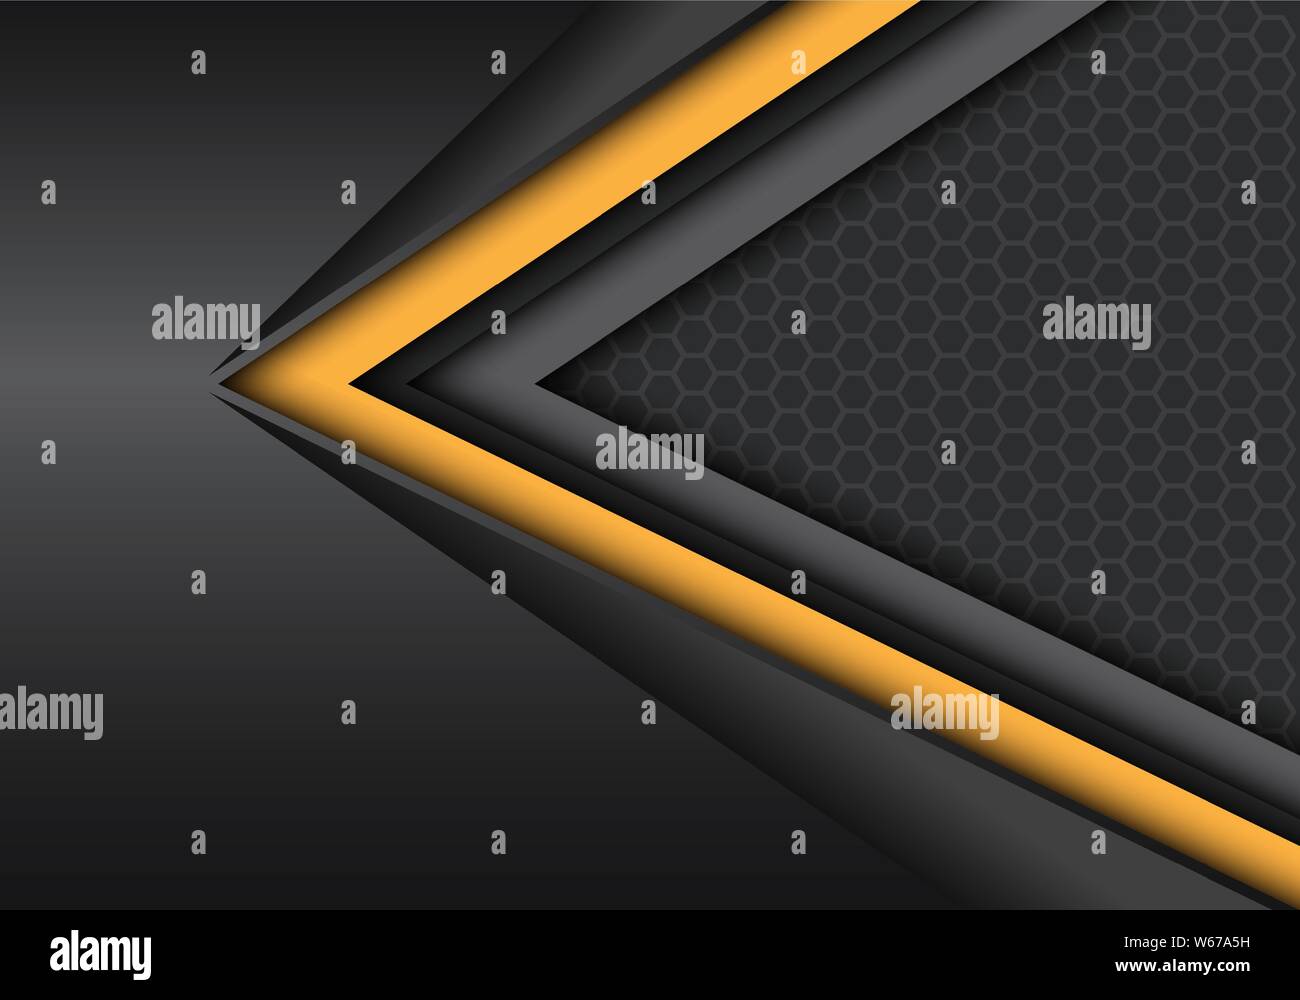 Abstrakte gelb schwarz Geschwindigkeit Richtung auf dunklem Metallic mit Sechskant mesh pattern Design moderne futuristischen Hintergrund Vector Illustration. Stock Vektor